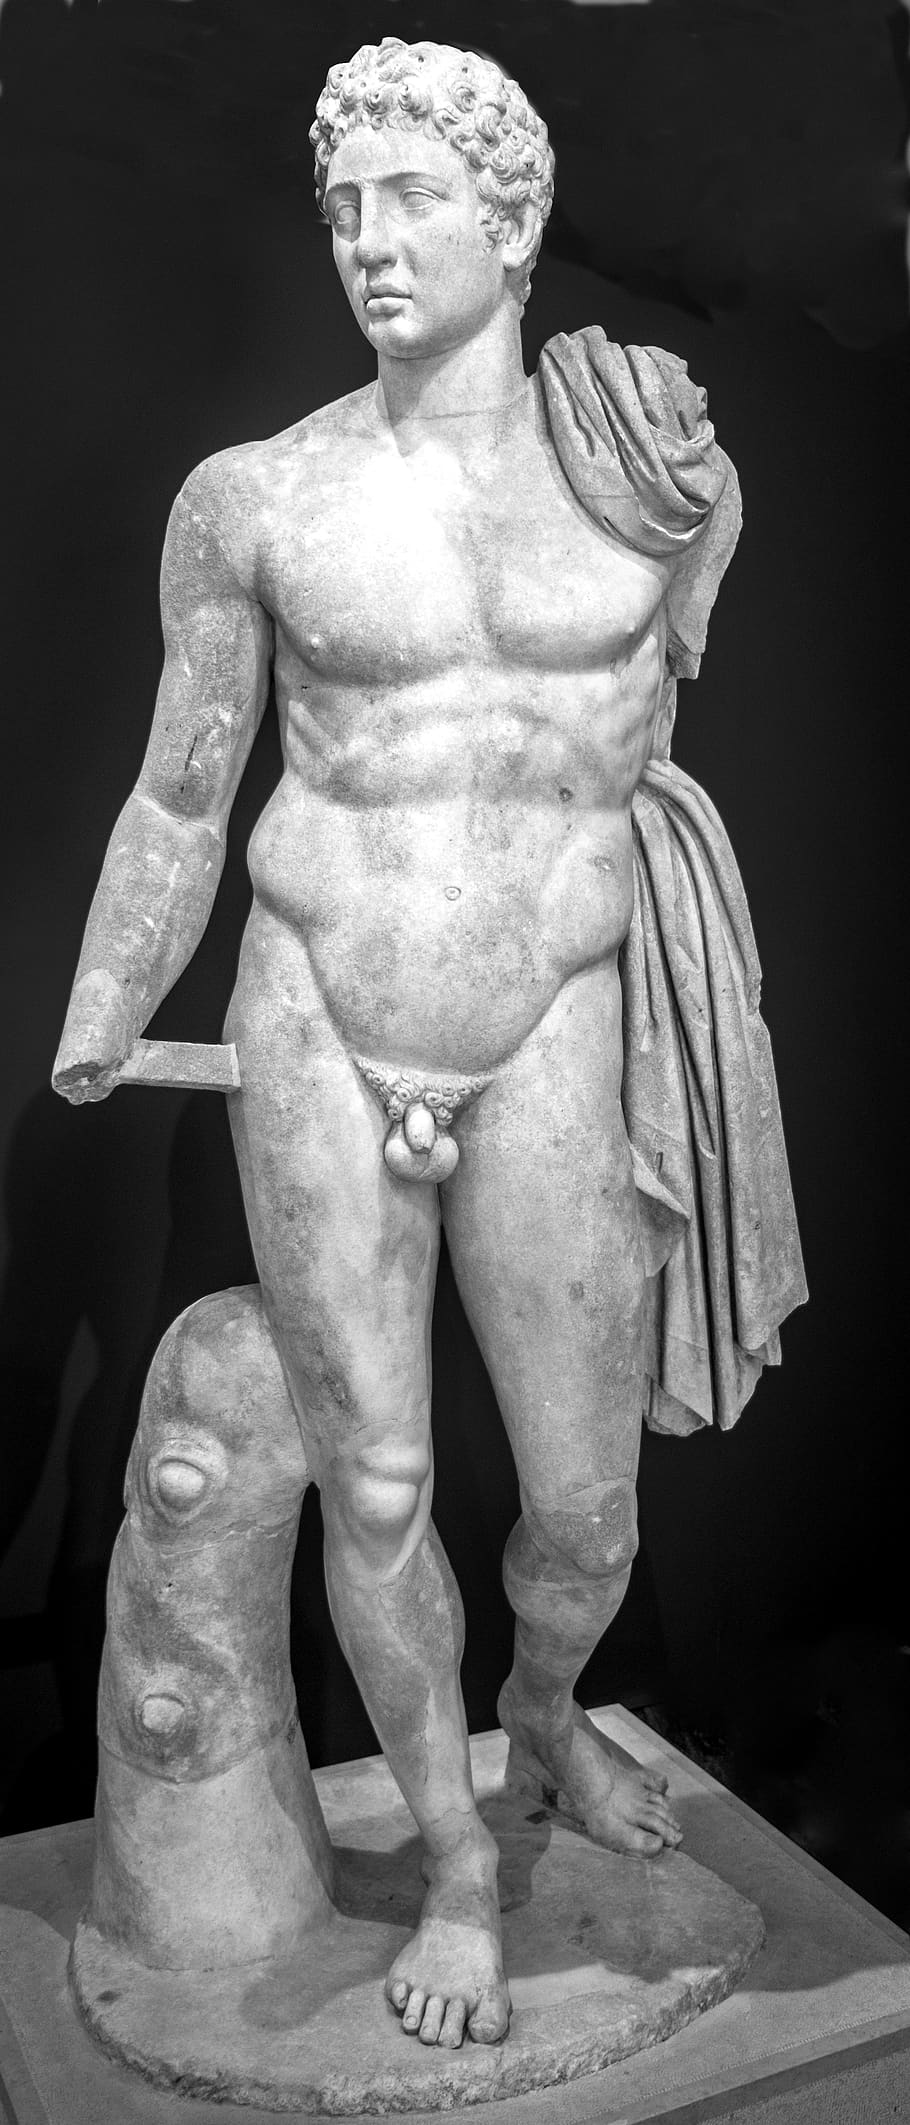 Hermes, estatua, escultura, arte, cuerpo desnudo, museo, Grecia antigua, representación humana, arte y artesanía, representación